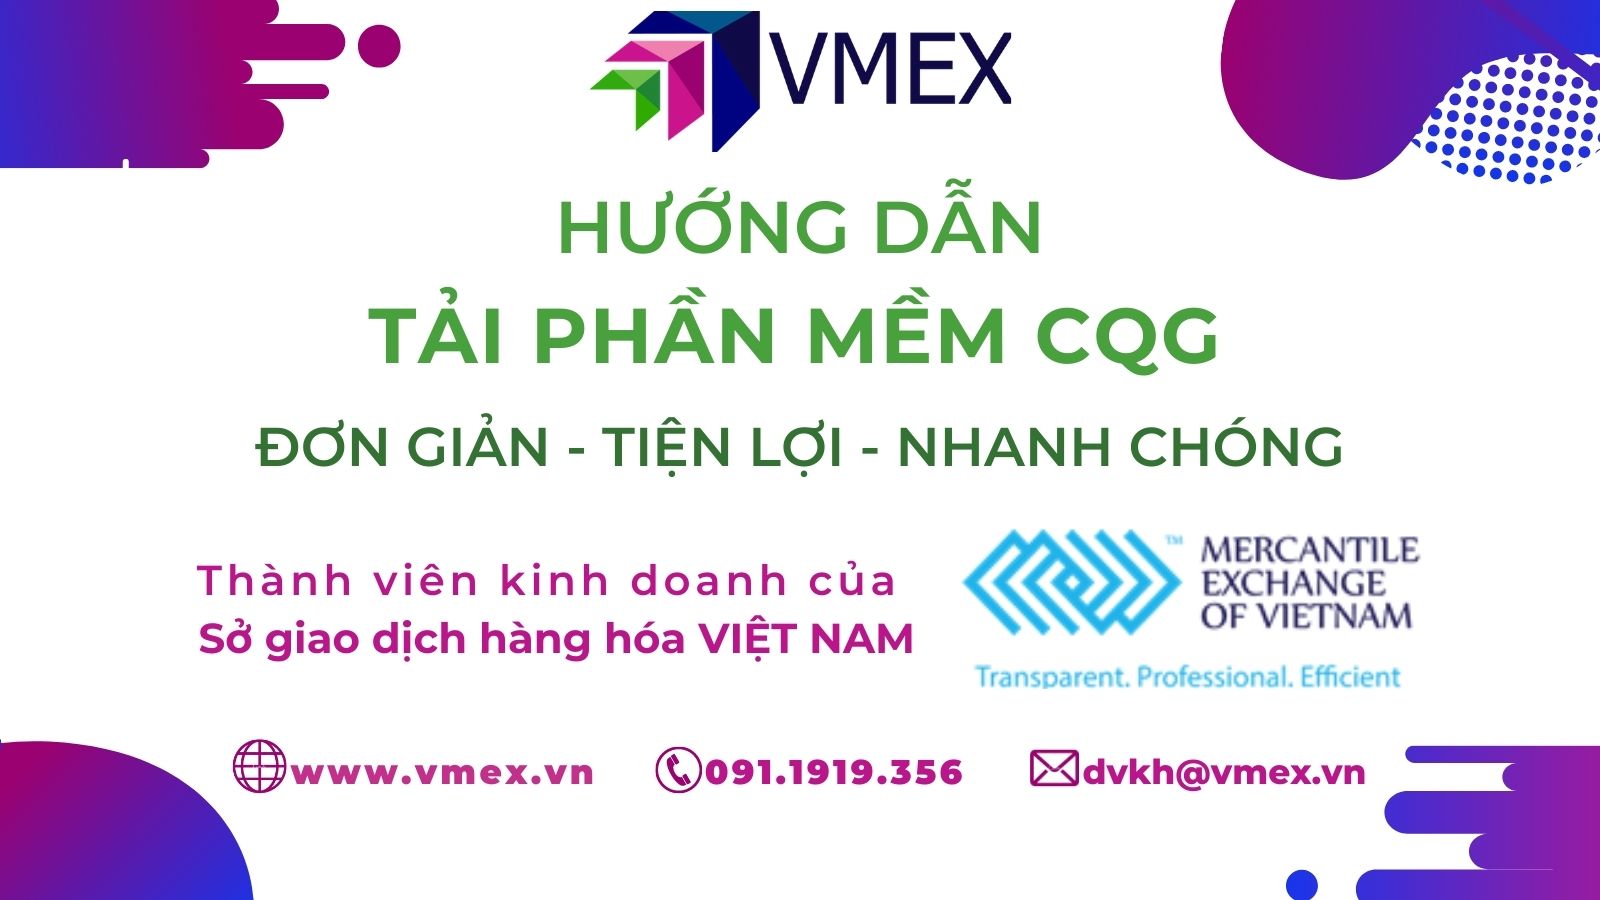 Phần mềm CQG | VMEX